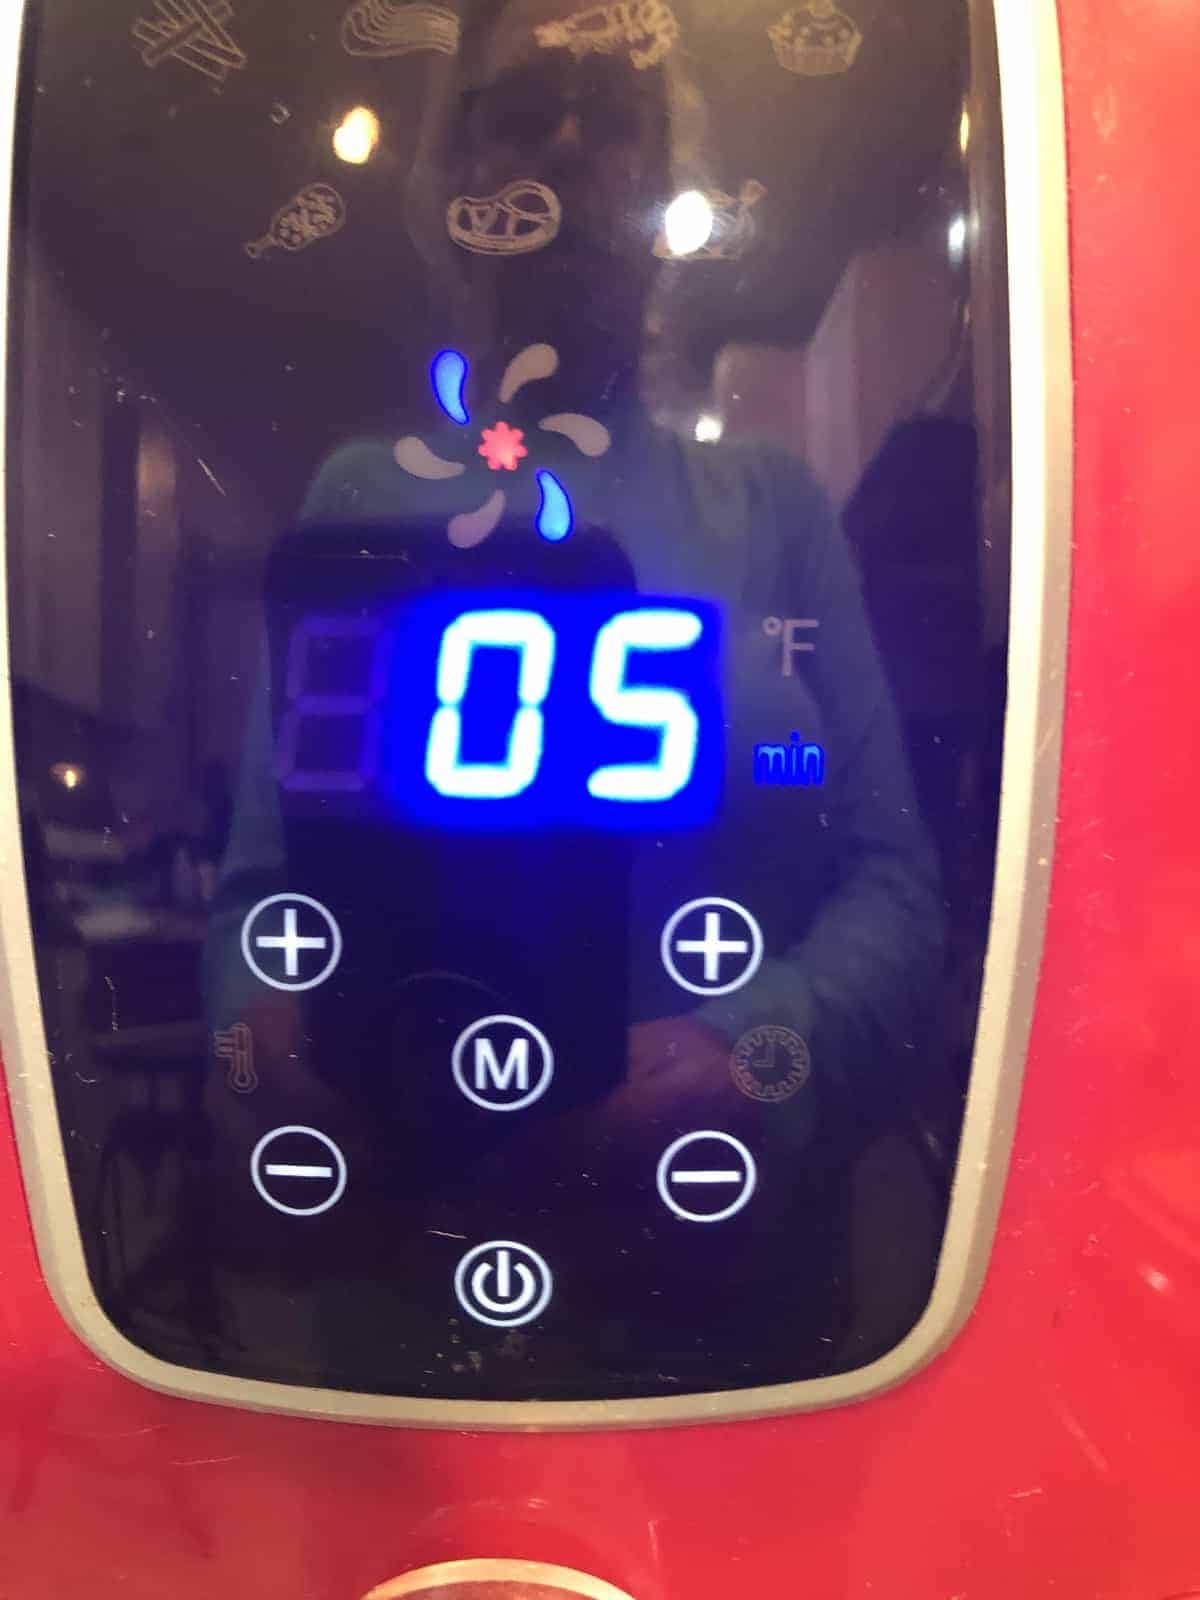 Air Fryer cooking time display